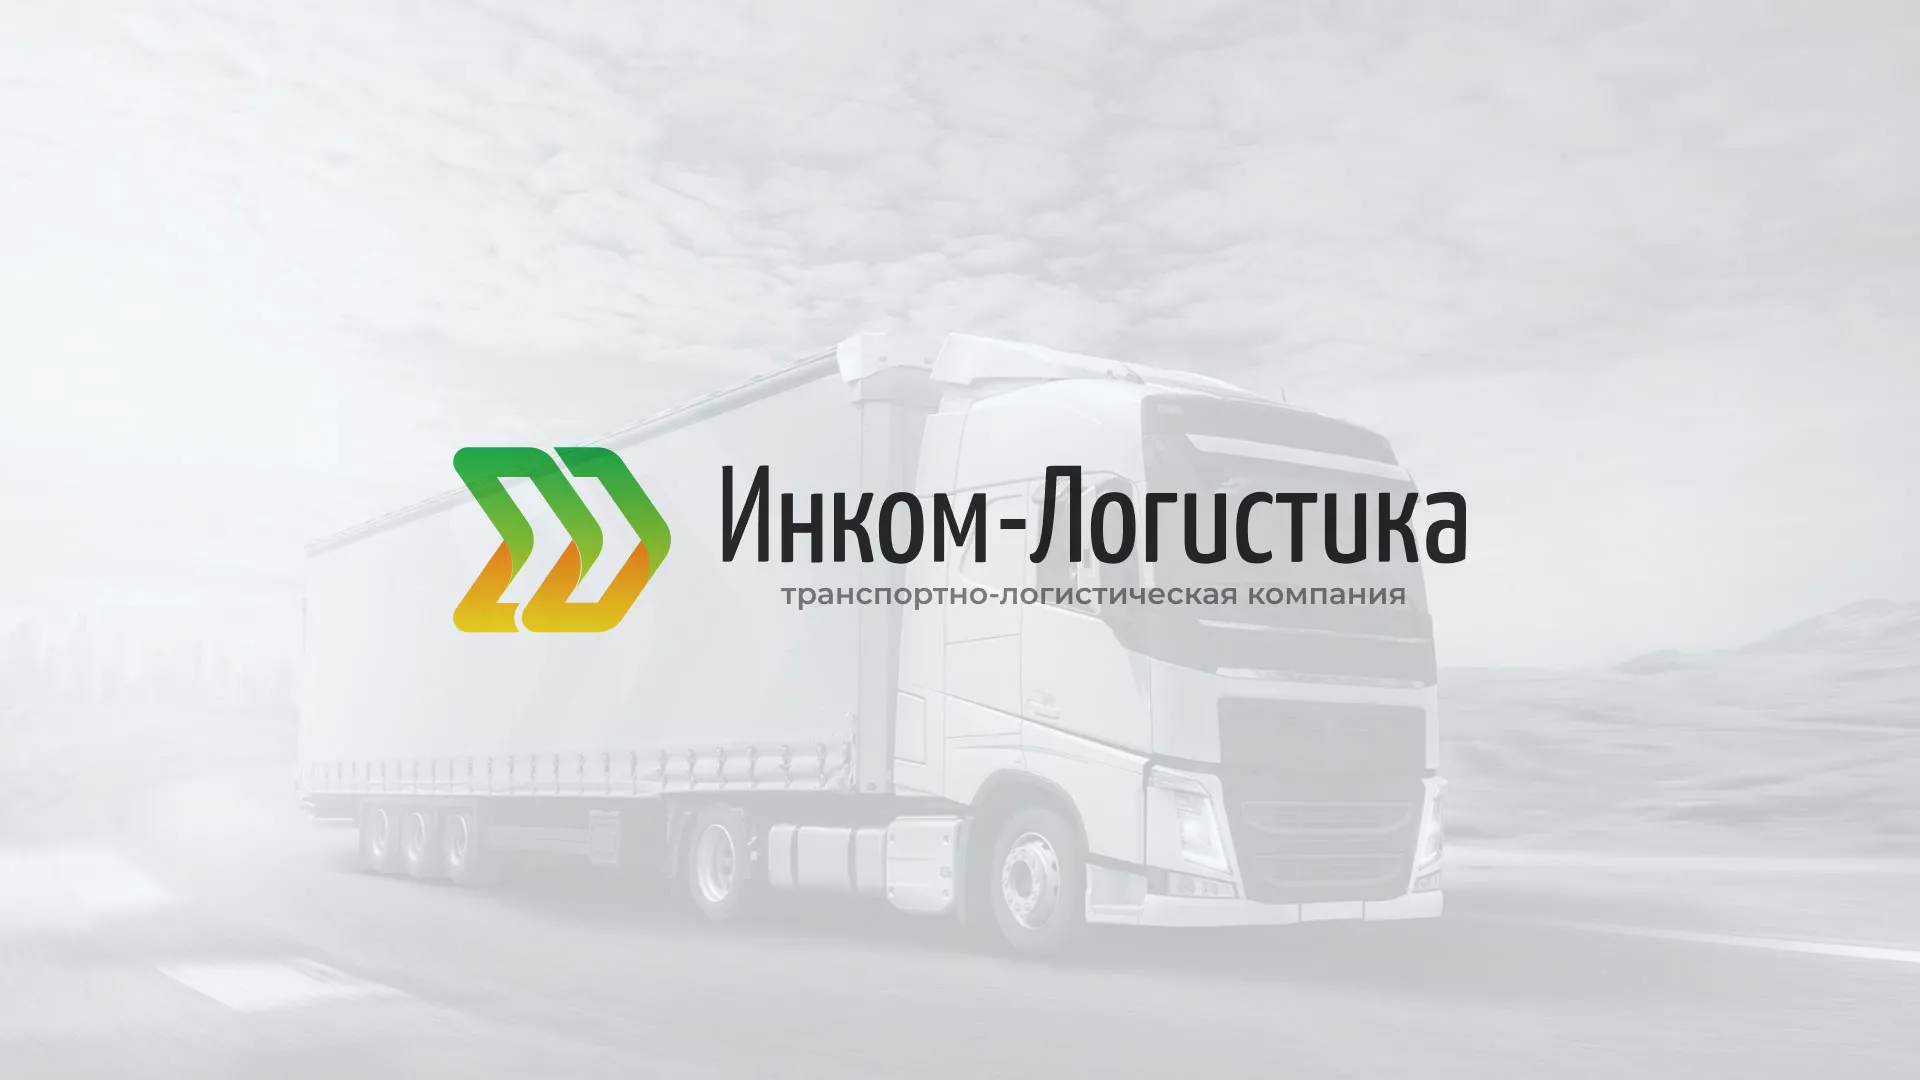 Разработка логотипа и сайта компании «Инком-Логистика» в Малоархангельске